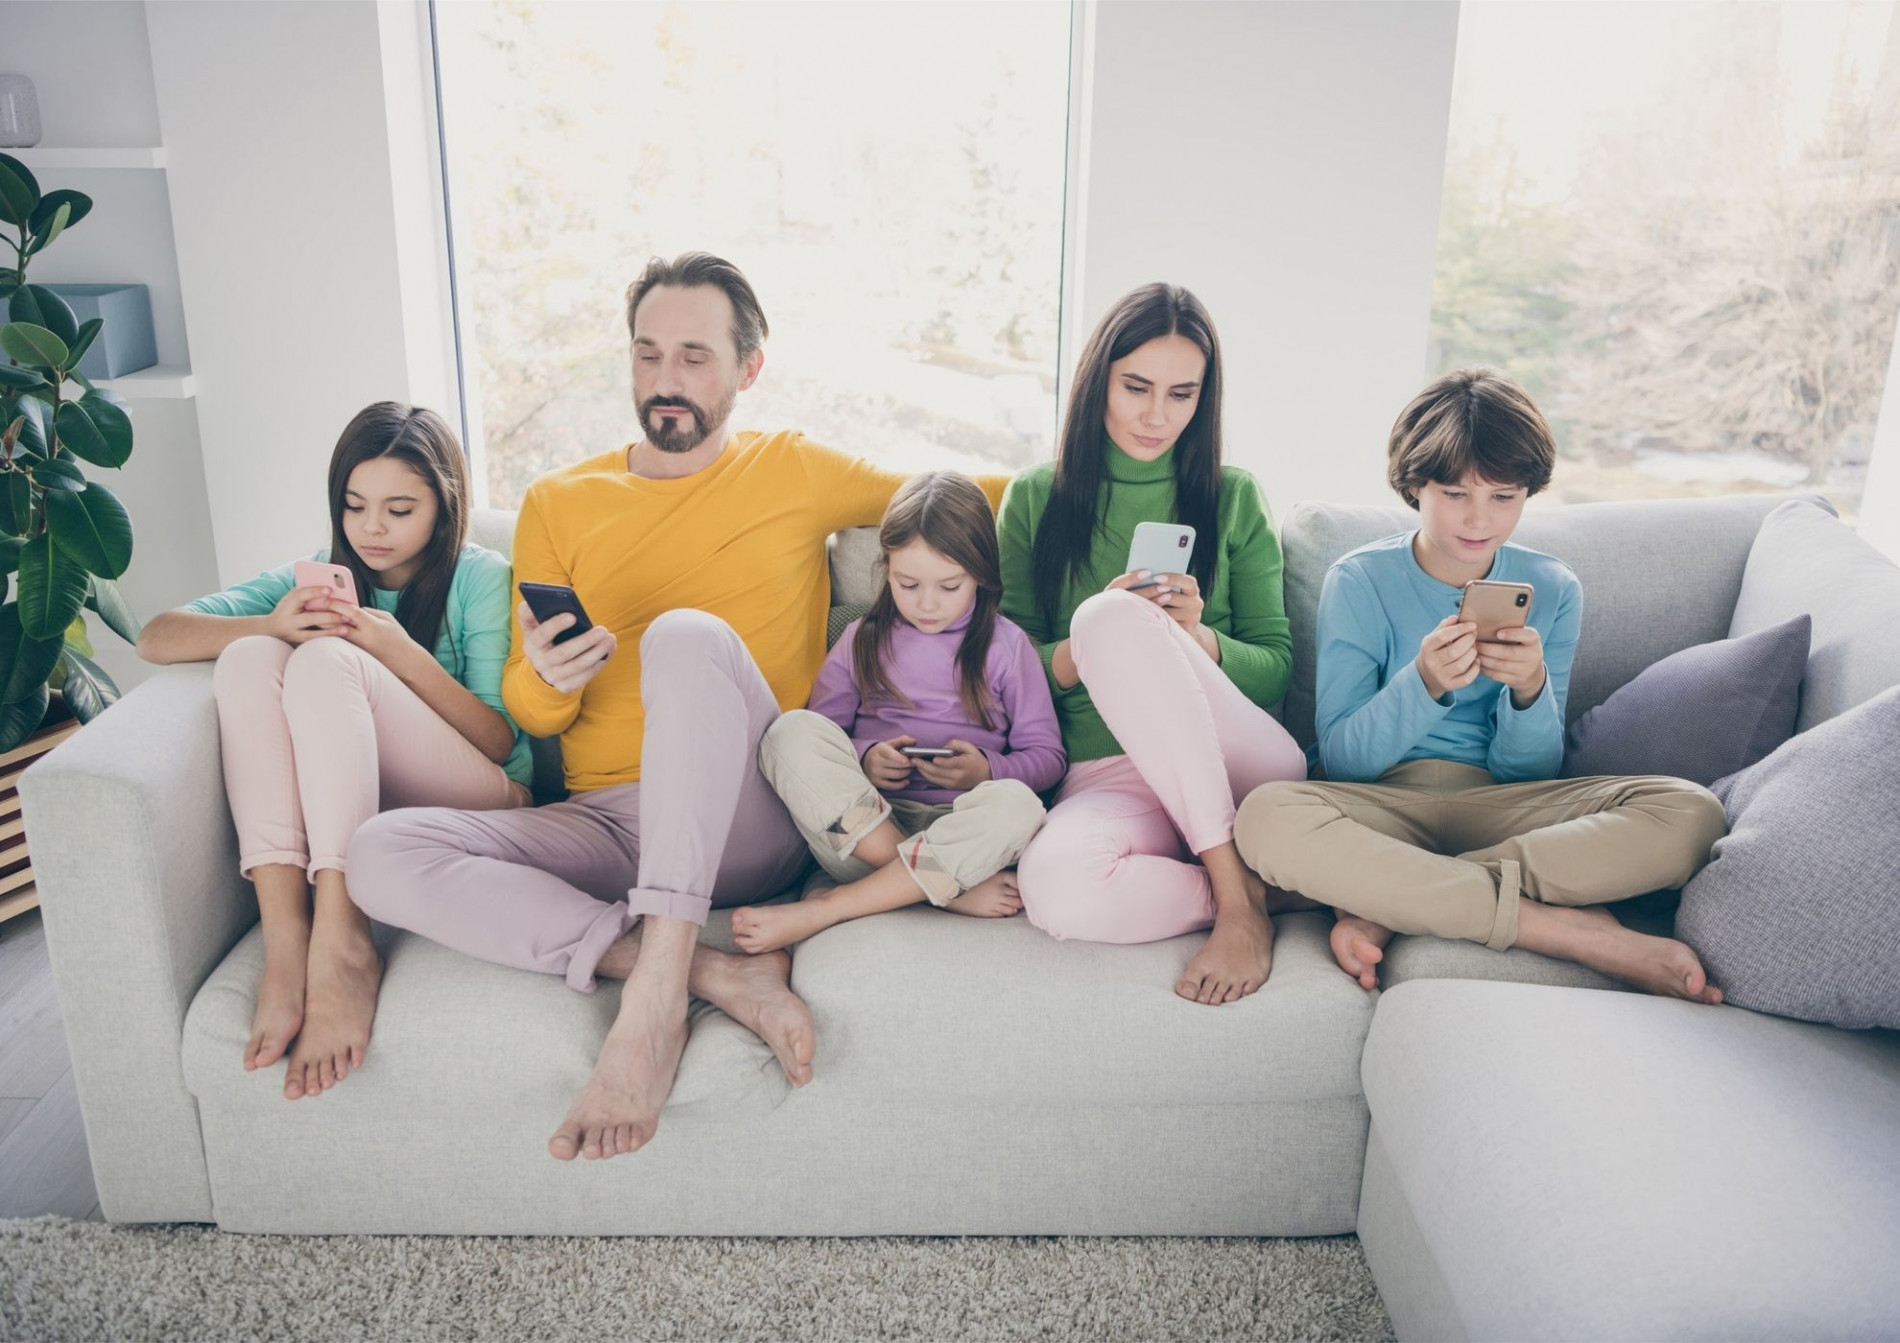 Ново проучване показва пряка връзка между времето, което родителите и техните деца прекарват пред дигиталните устройства